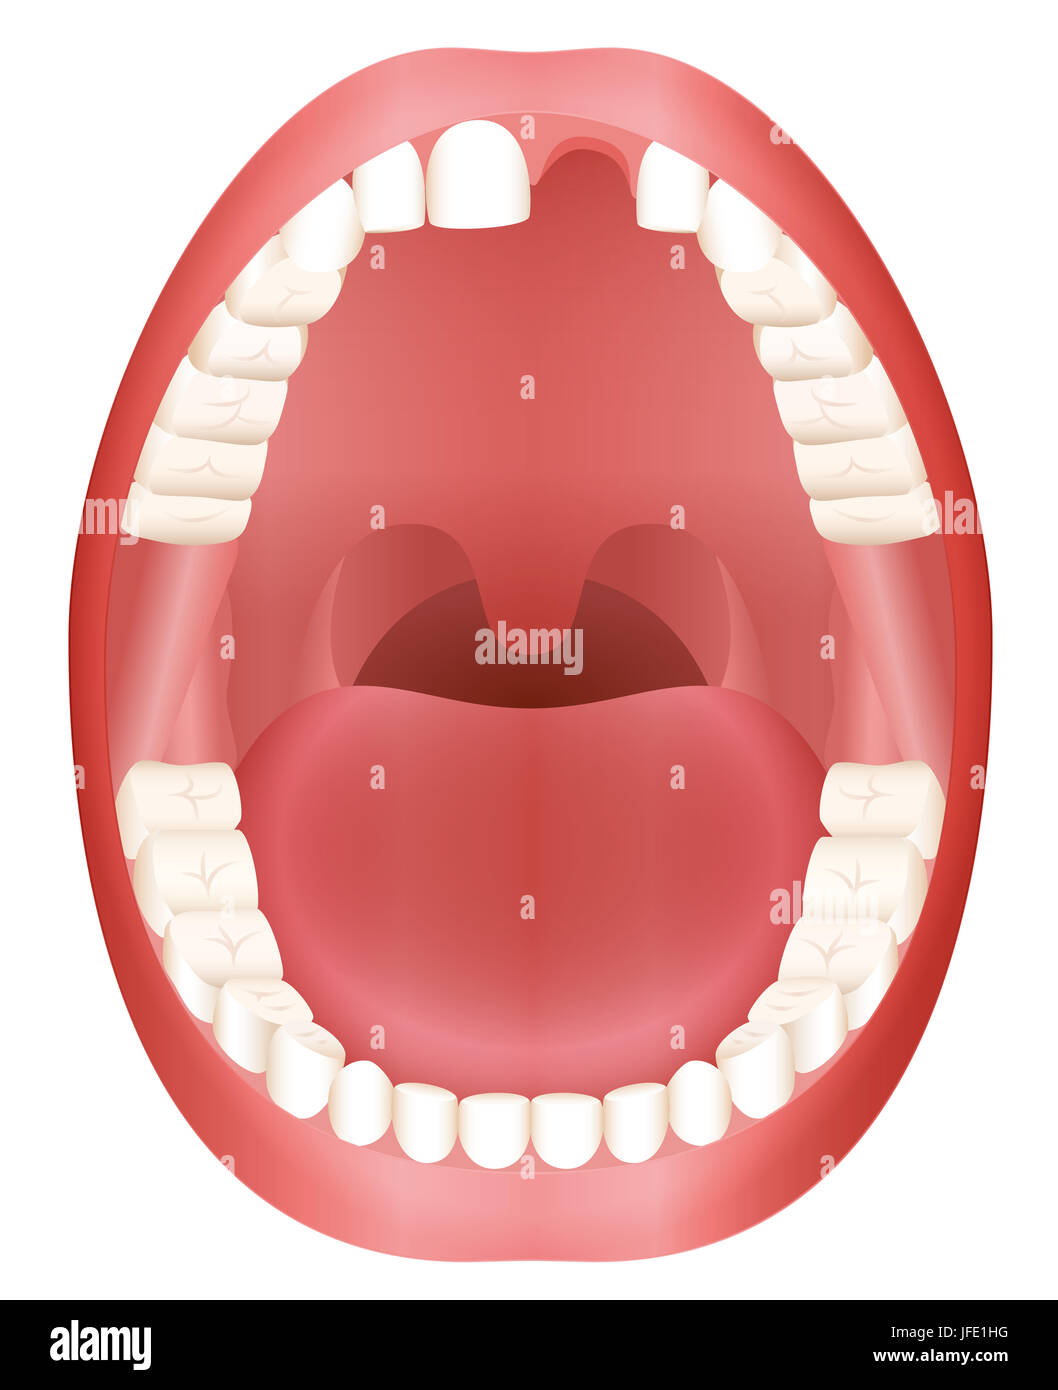 La perte de dents - adulte bouche avec une absence d'une dent avant. Banque D'Images